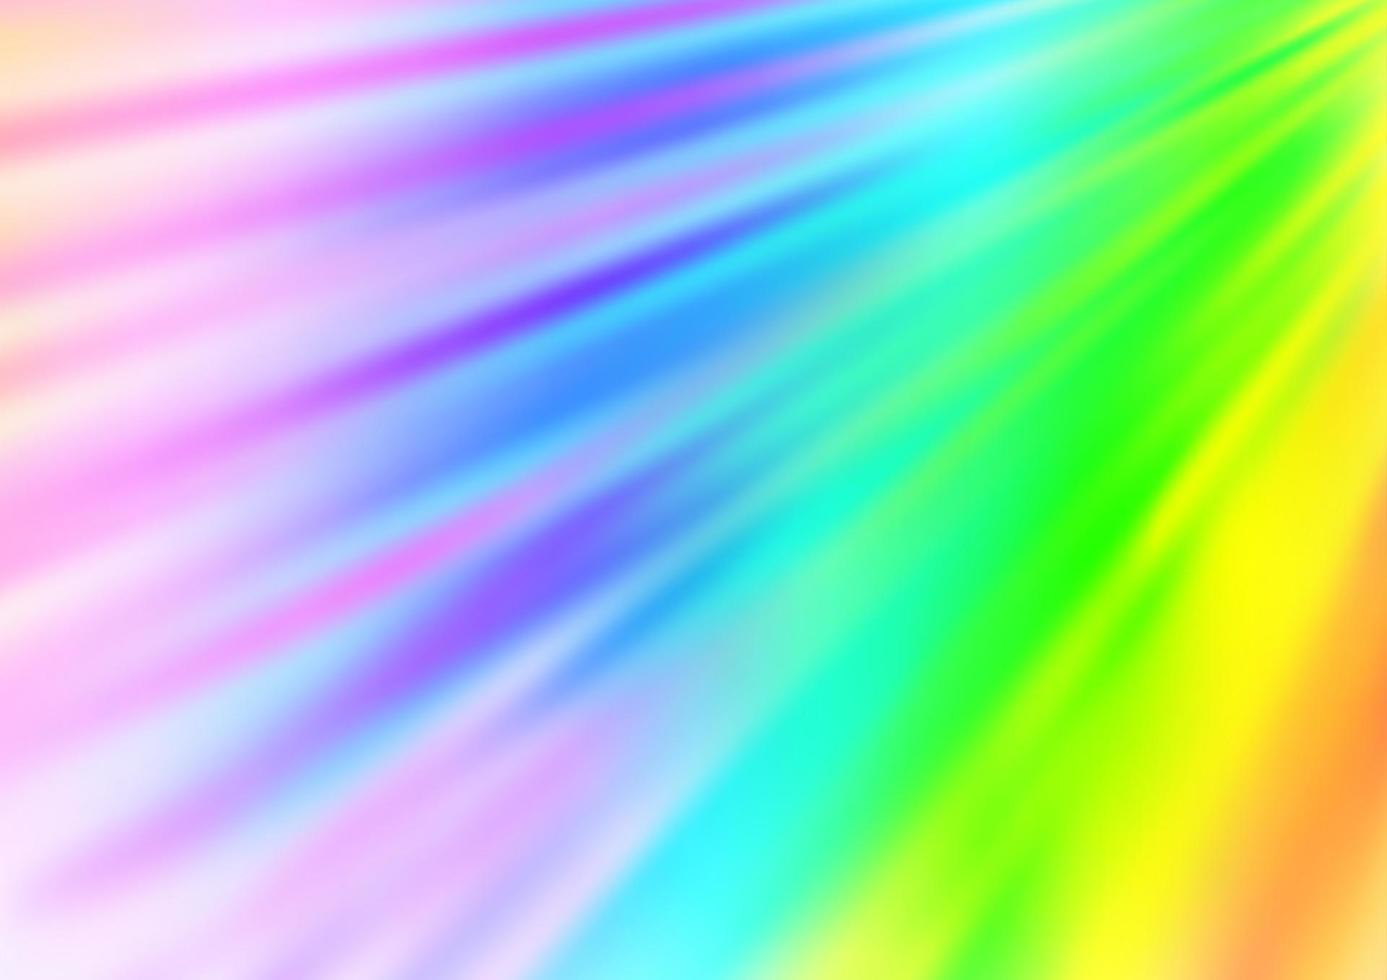 ljus mångfärgad, regnbågsvektormall med upprepade pinnar. vektor